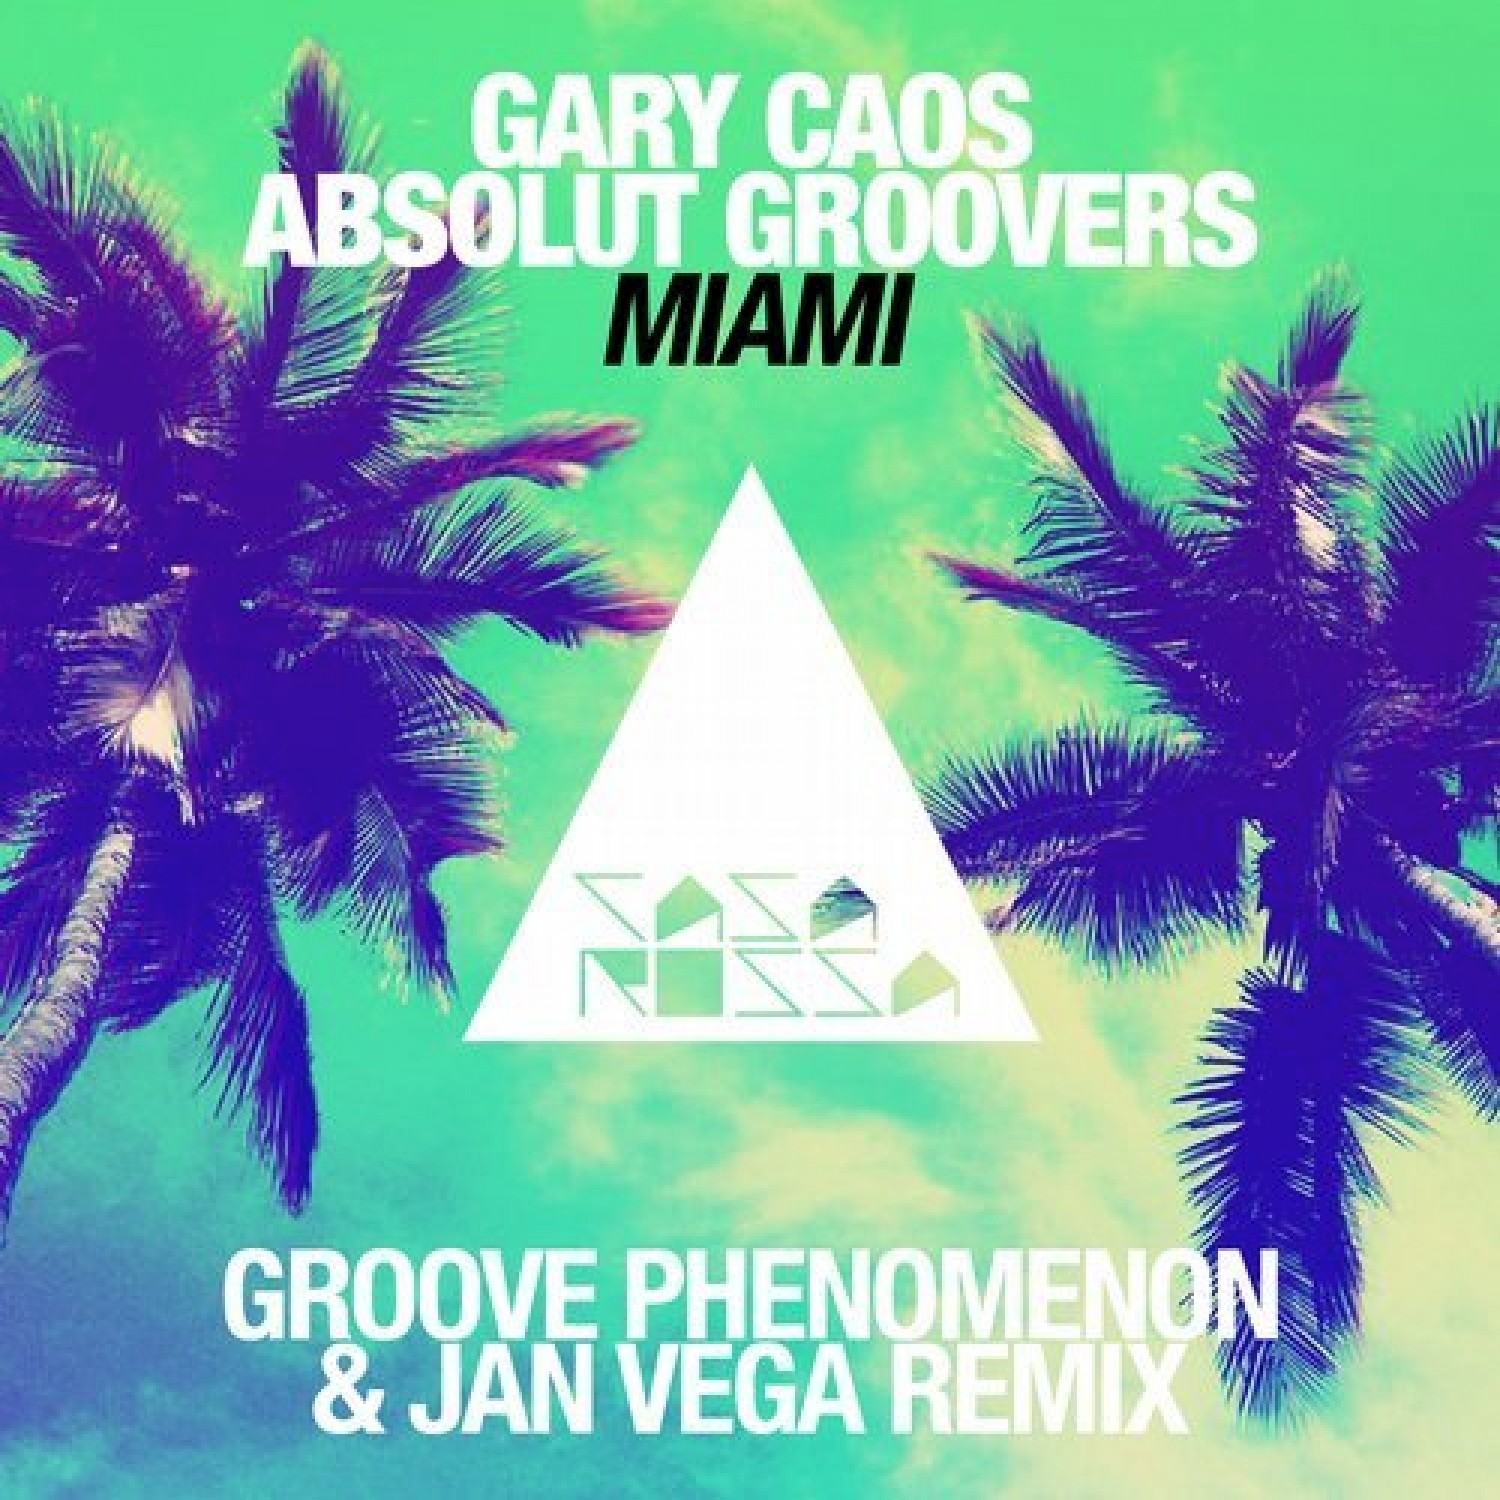 Miami (Jan Vega & Groove Phenomenon Remix)